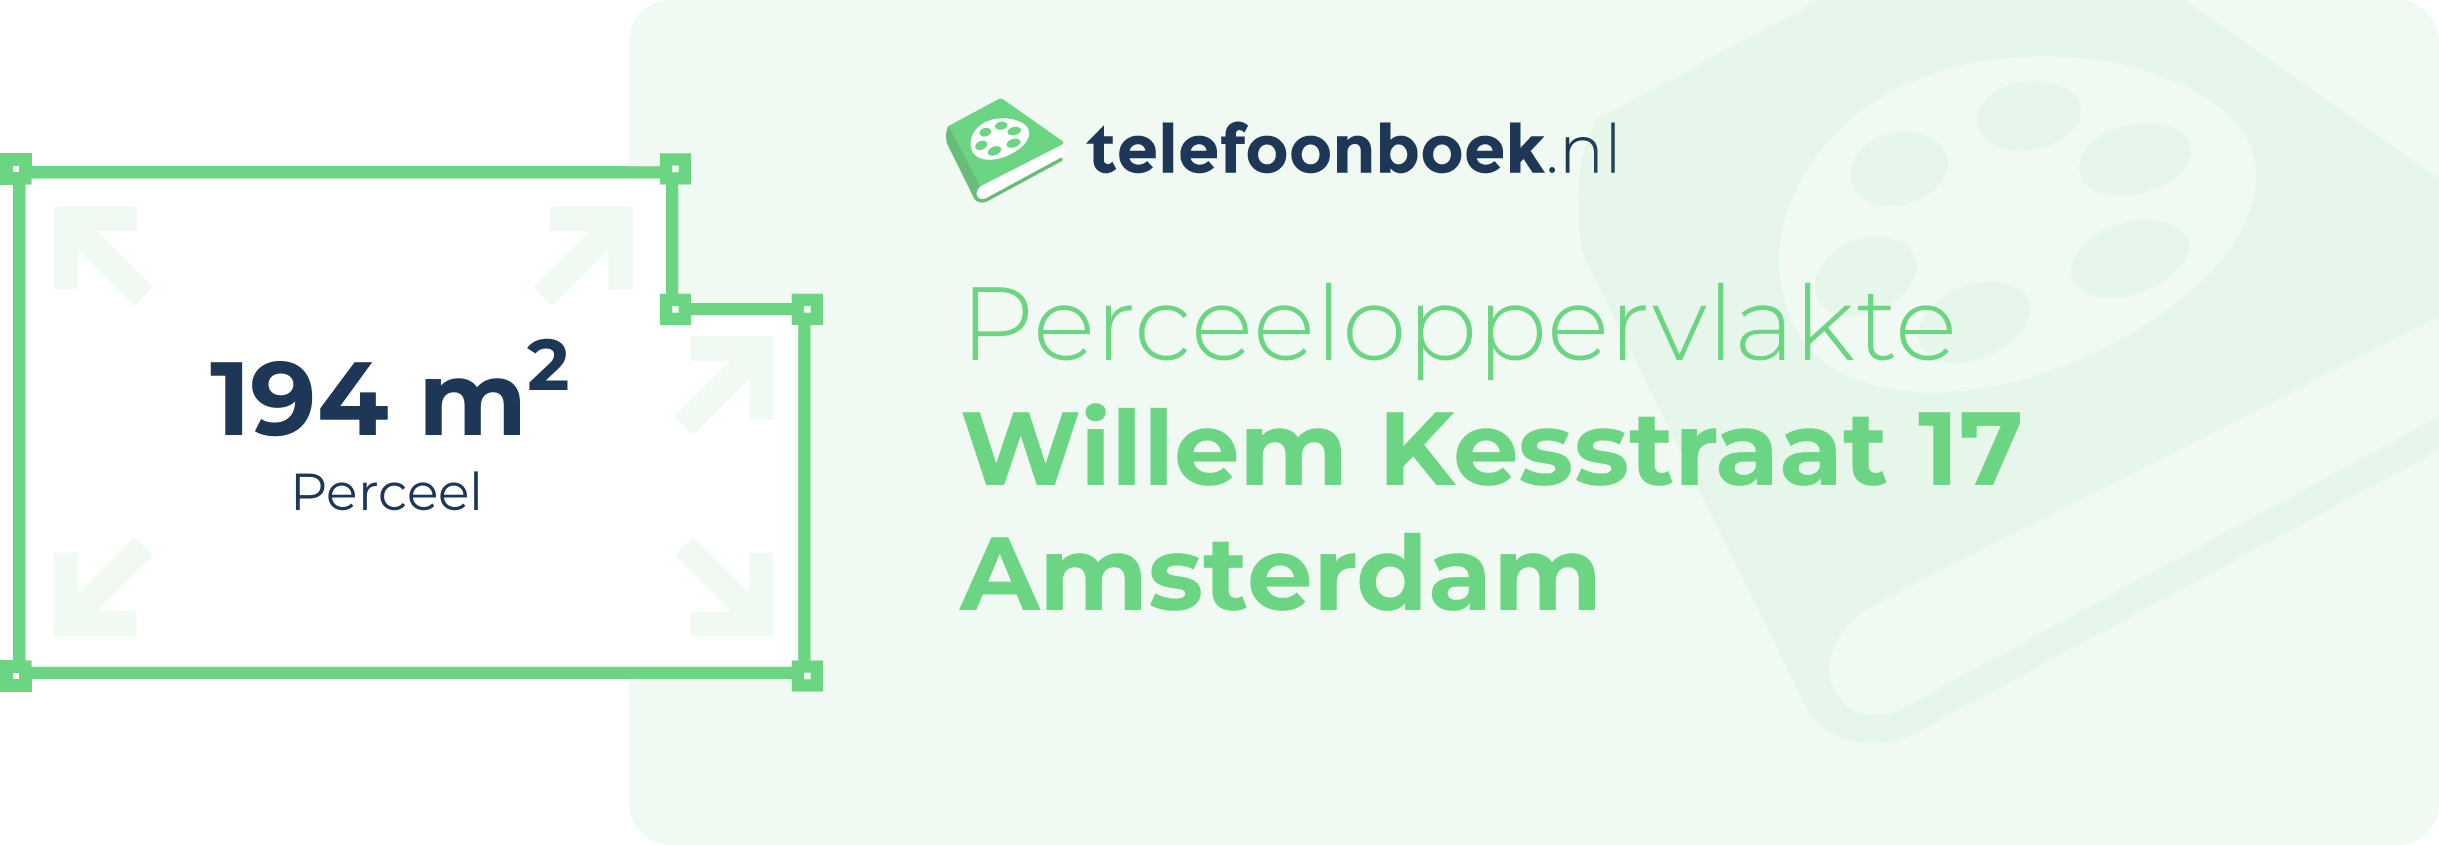 Perceeloppervlakte Willem Kesstraat 17 Amsterdam